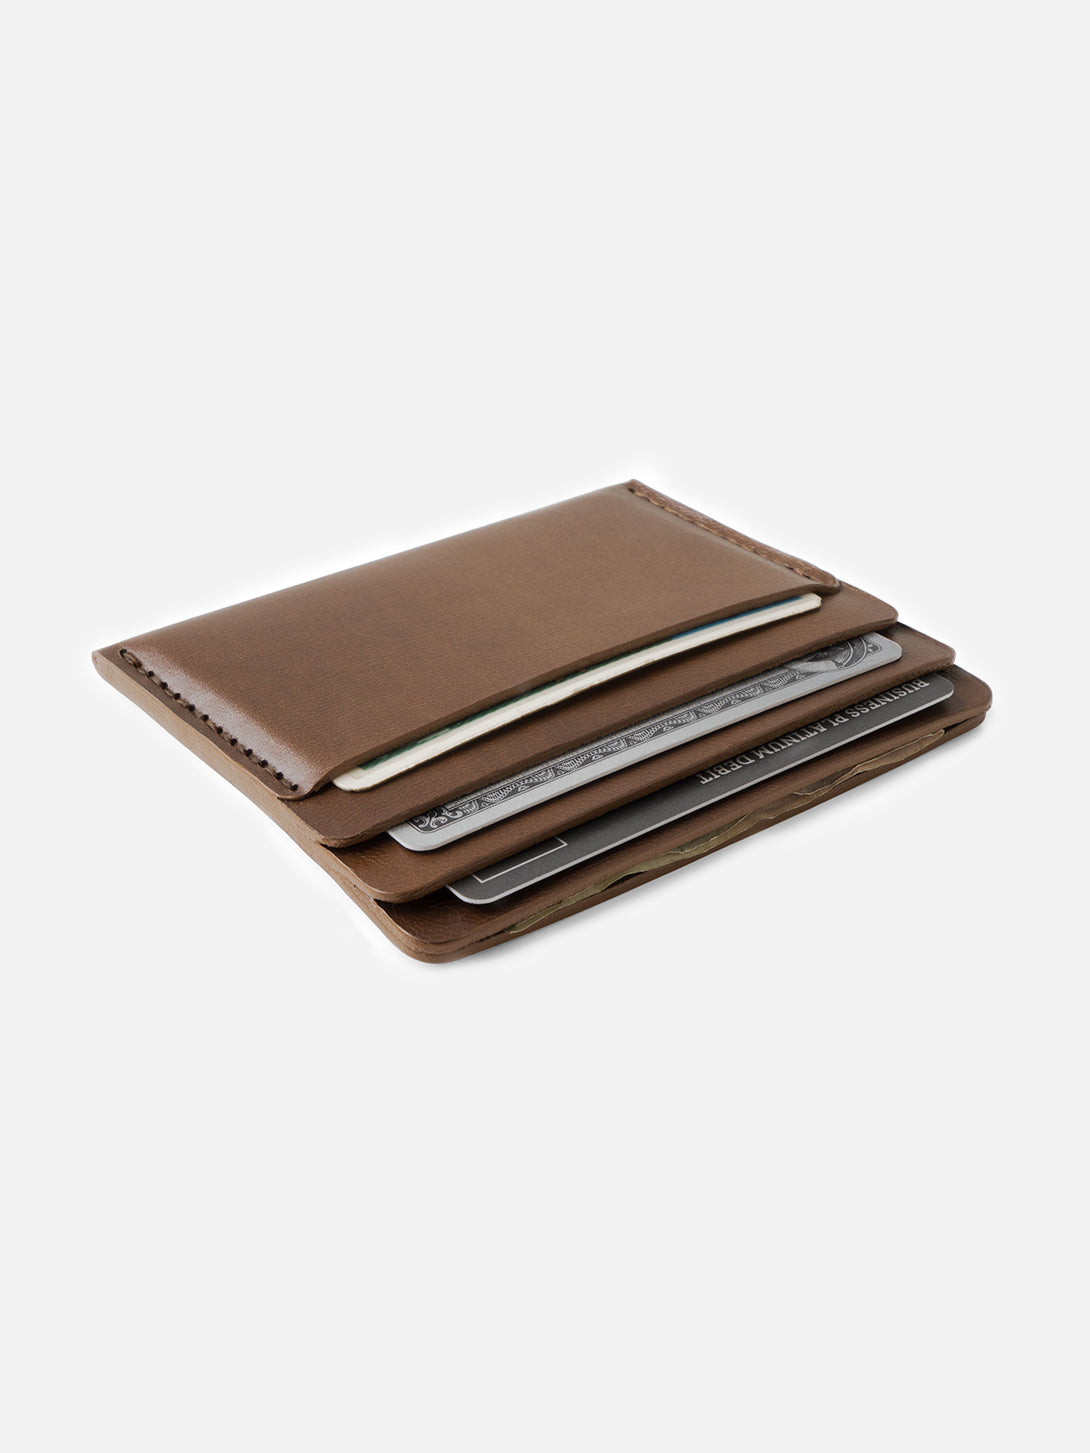 BARK mens card holder brown leather wallet cascade wallet makr